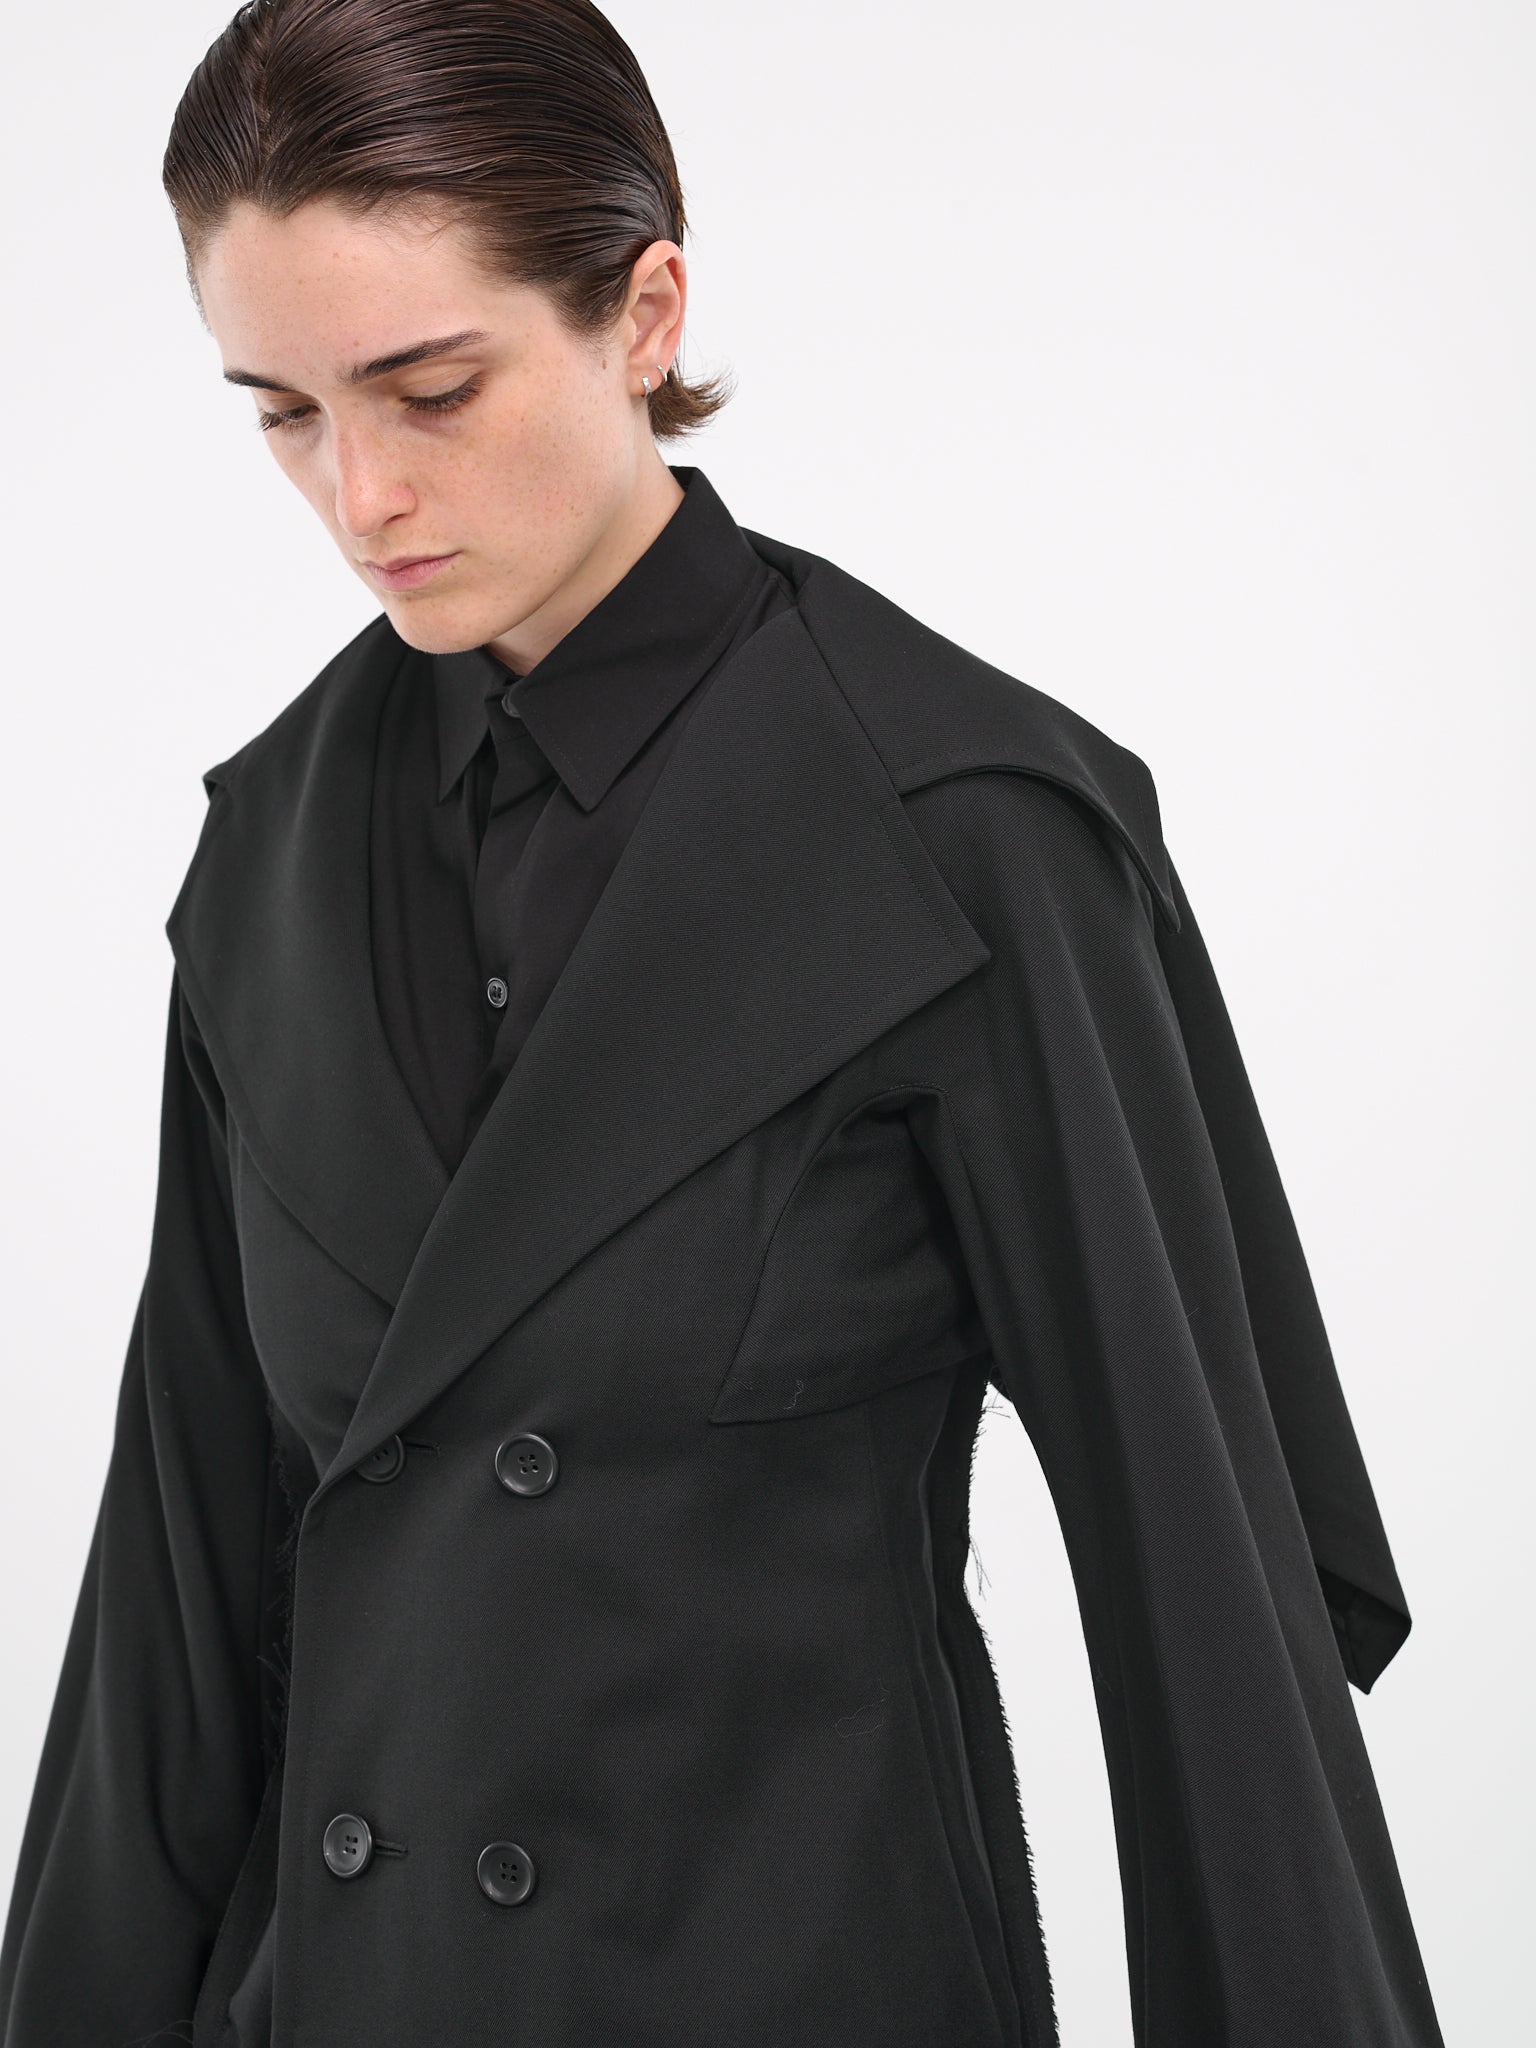 Deconstructed Tailored Coat (FJ-C65-103-1-02-BLACK)